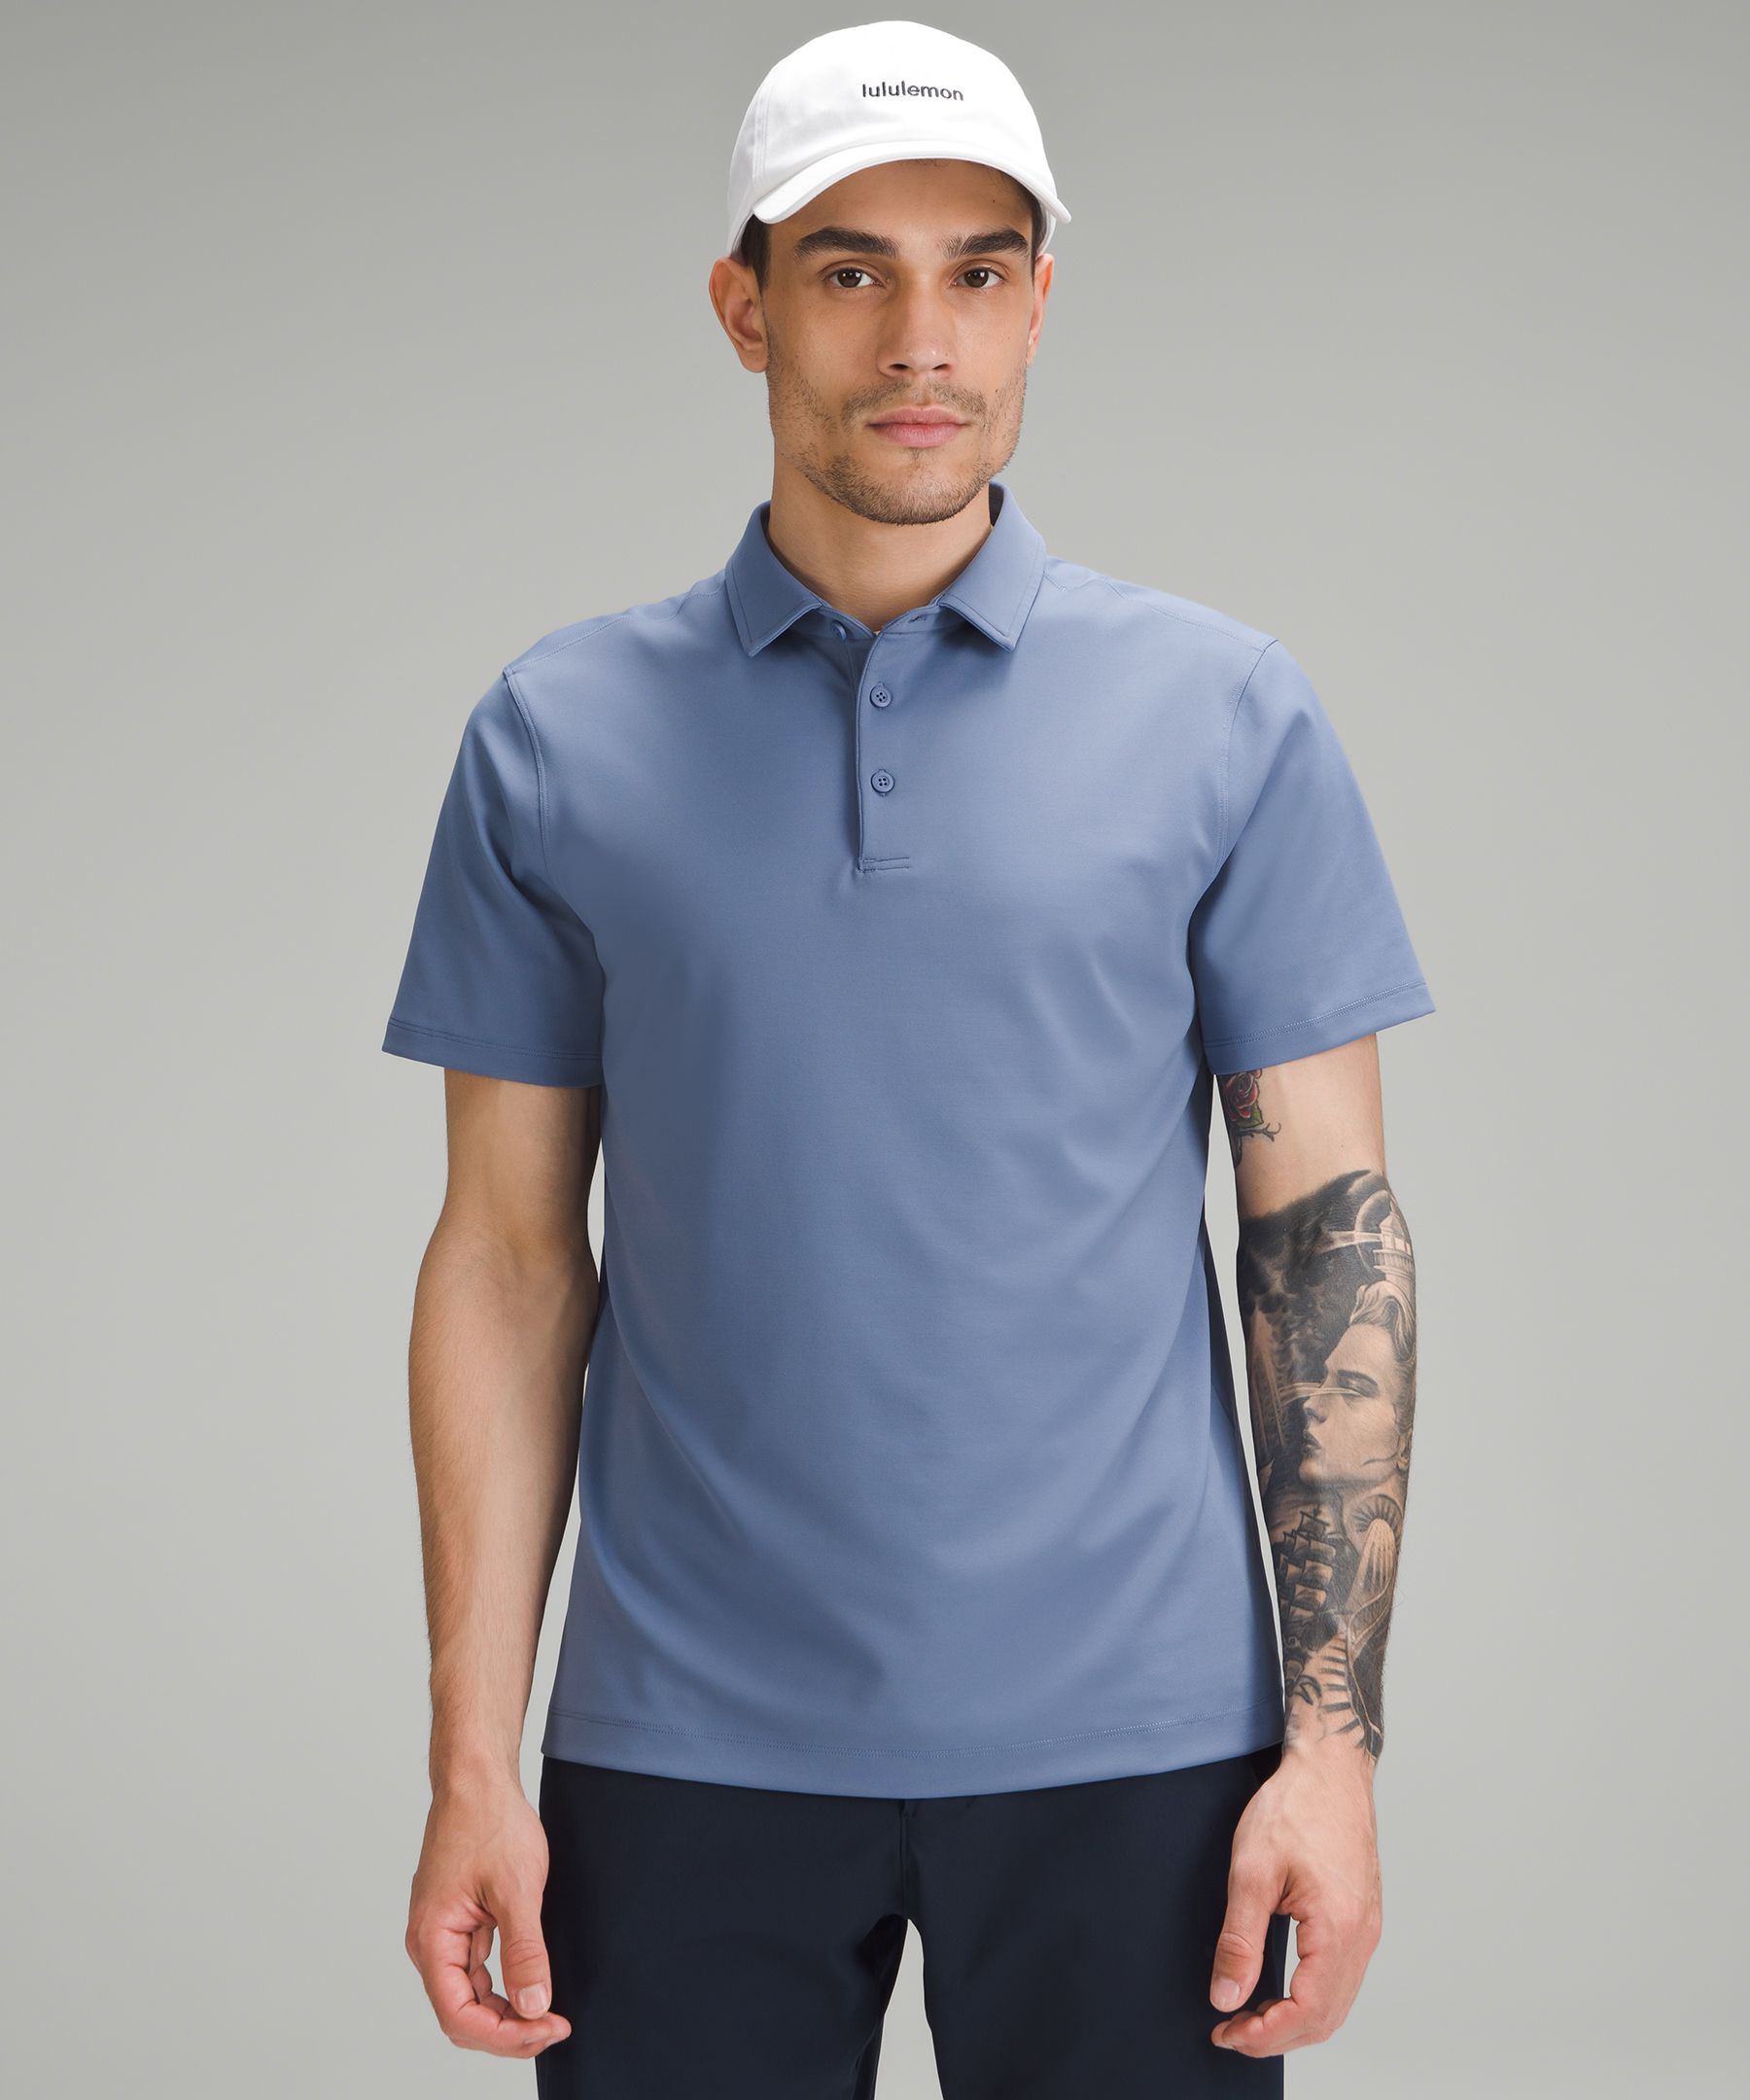 ShowZero™ Polo | Men's Short Sleeve Shirts & Tee's